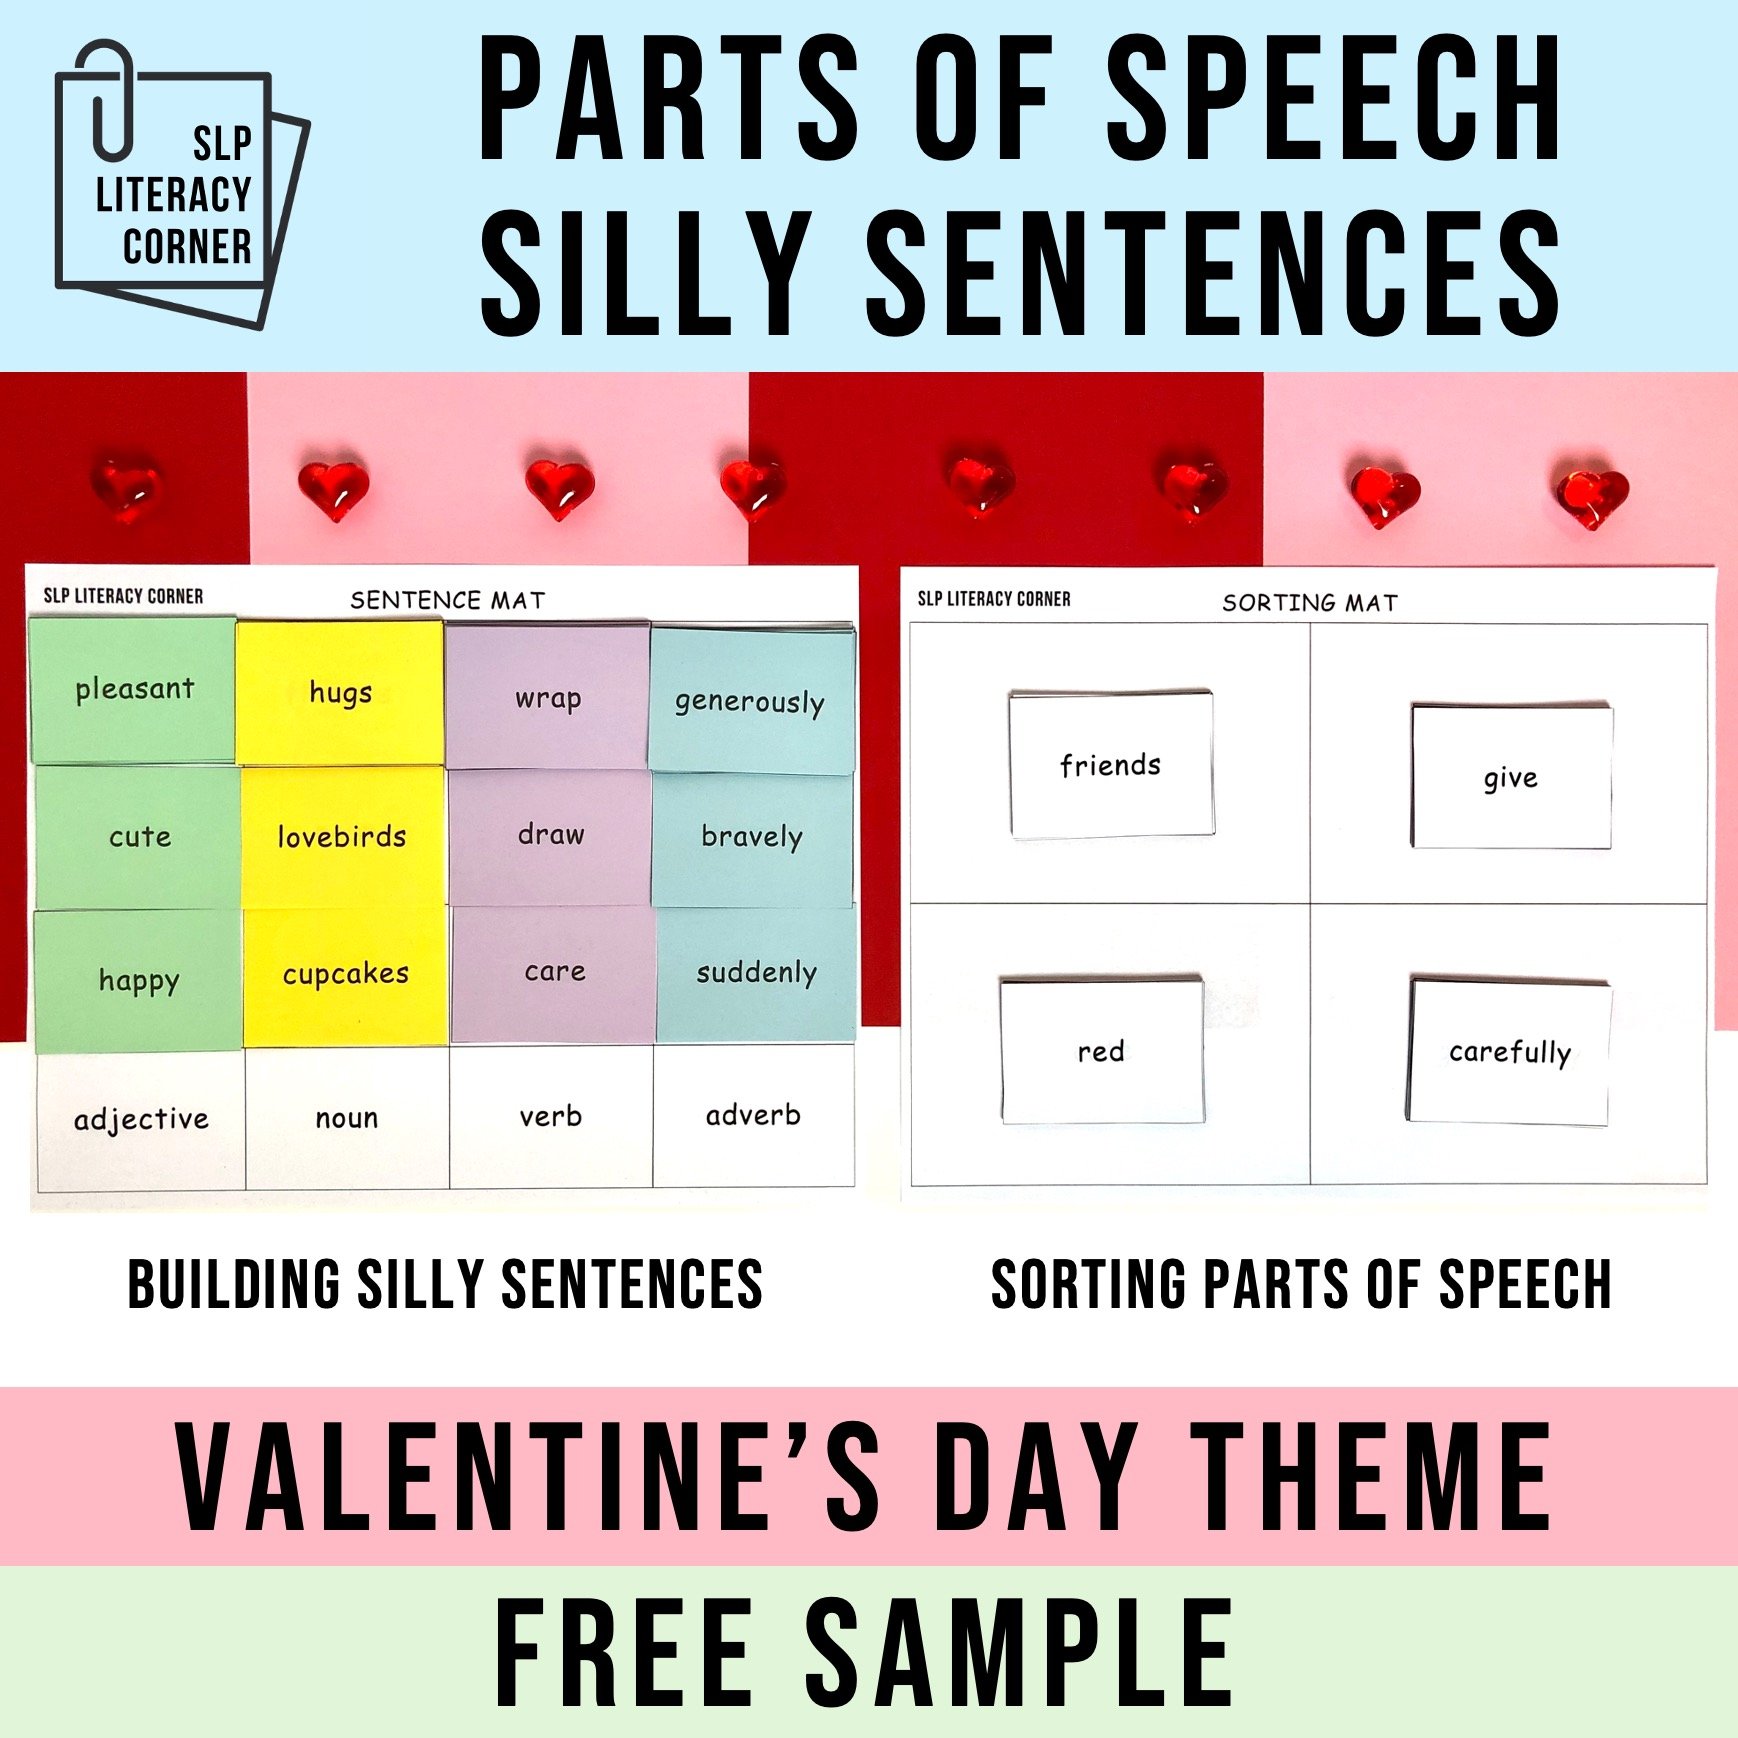 Valentines Parts of Speech.jpg